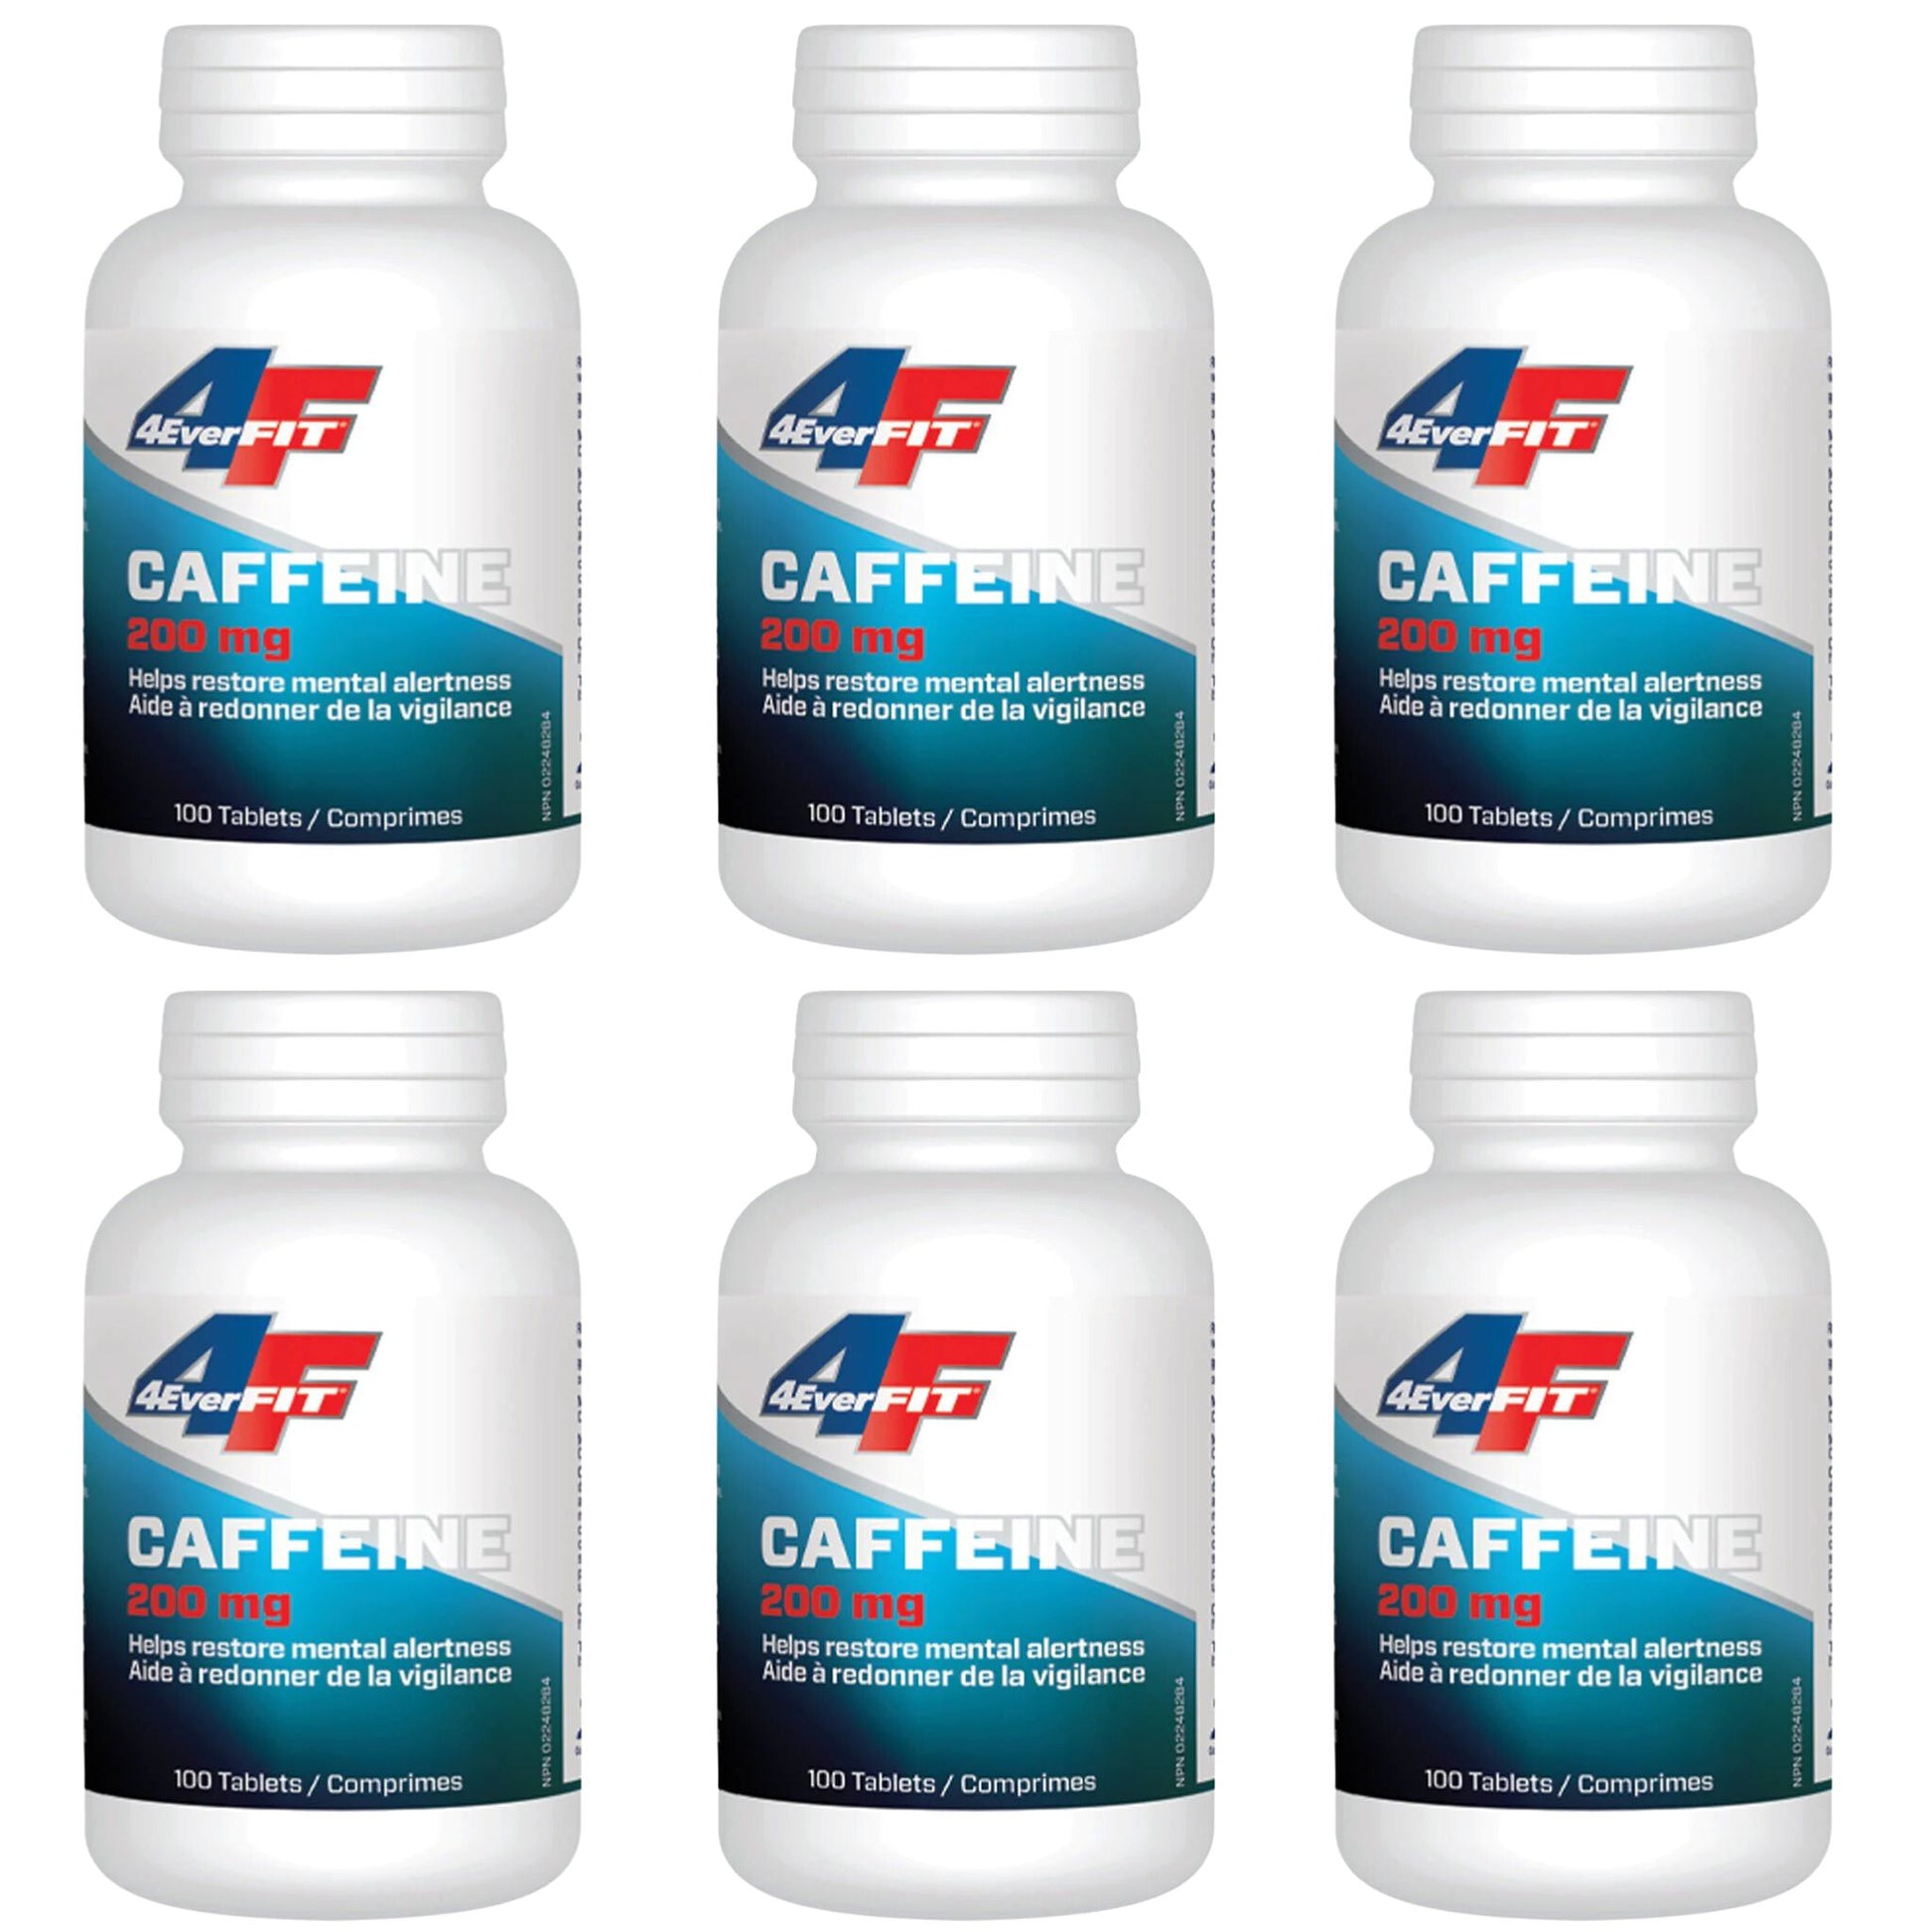 4everfit-caffeine-200mg-6bottles